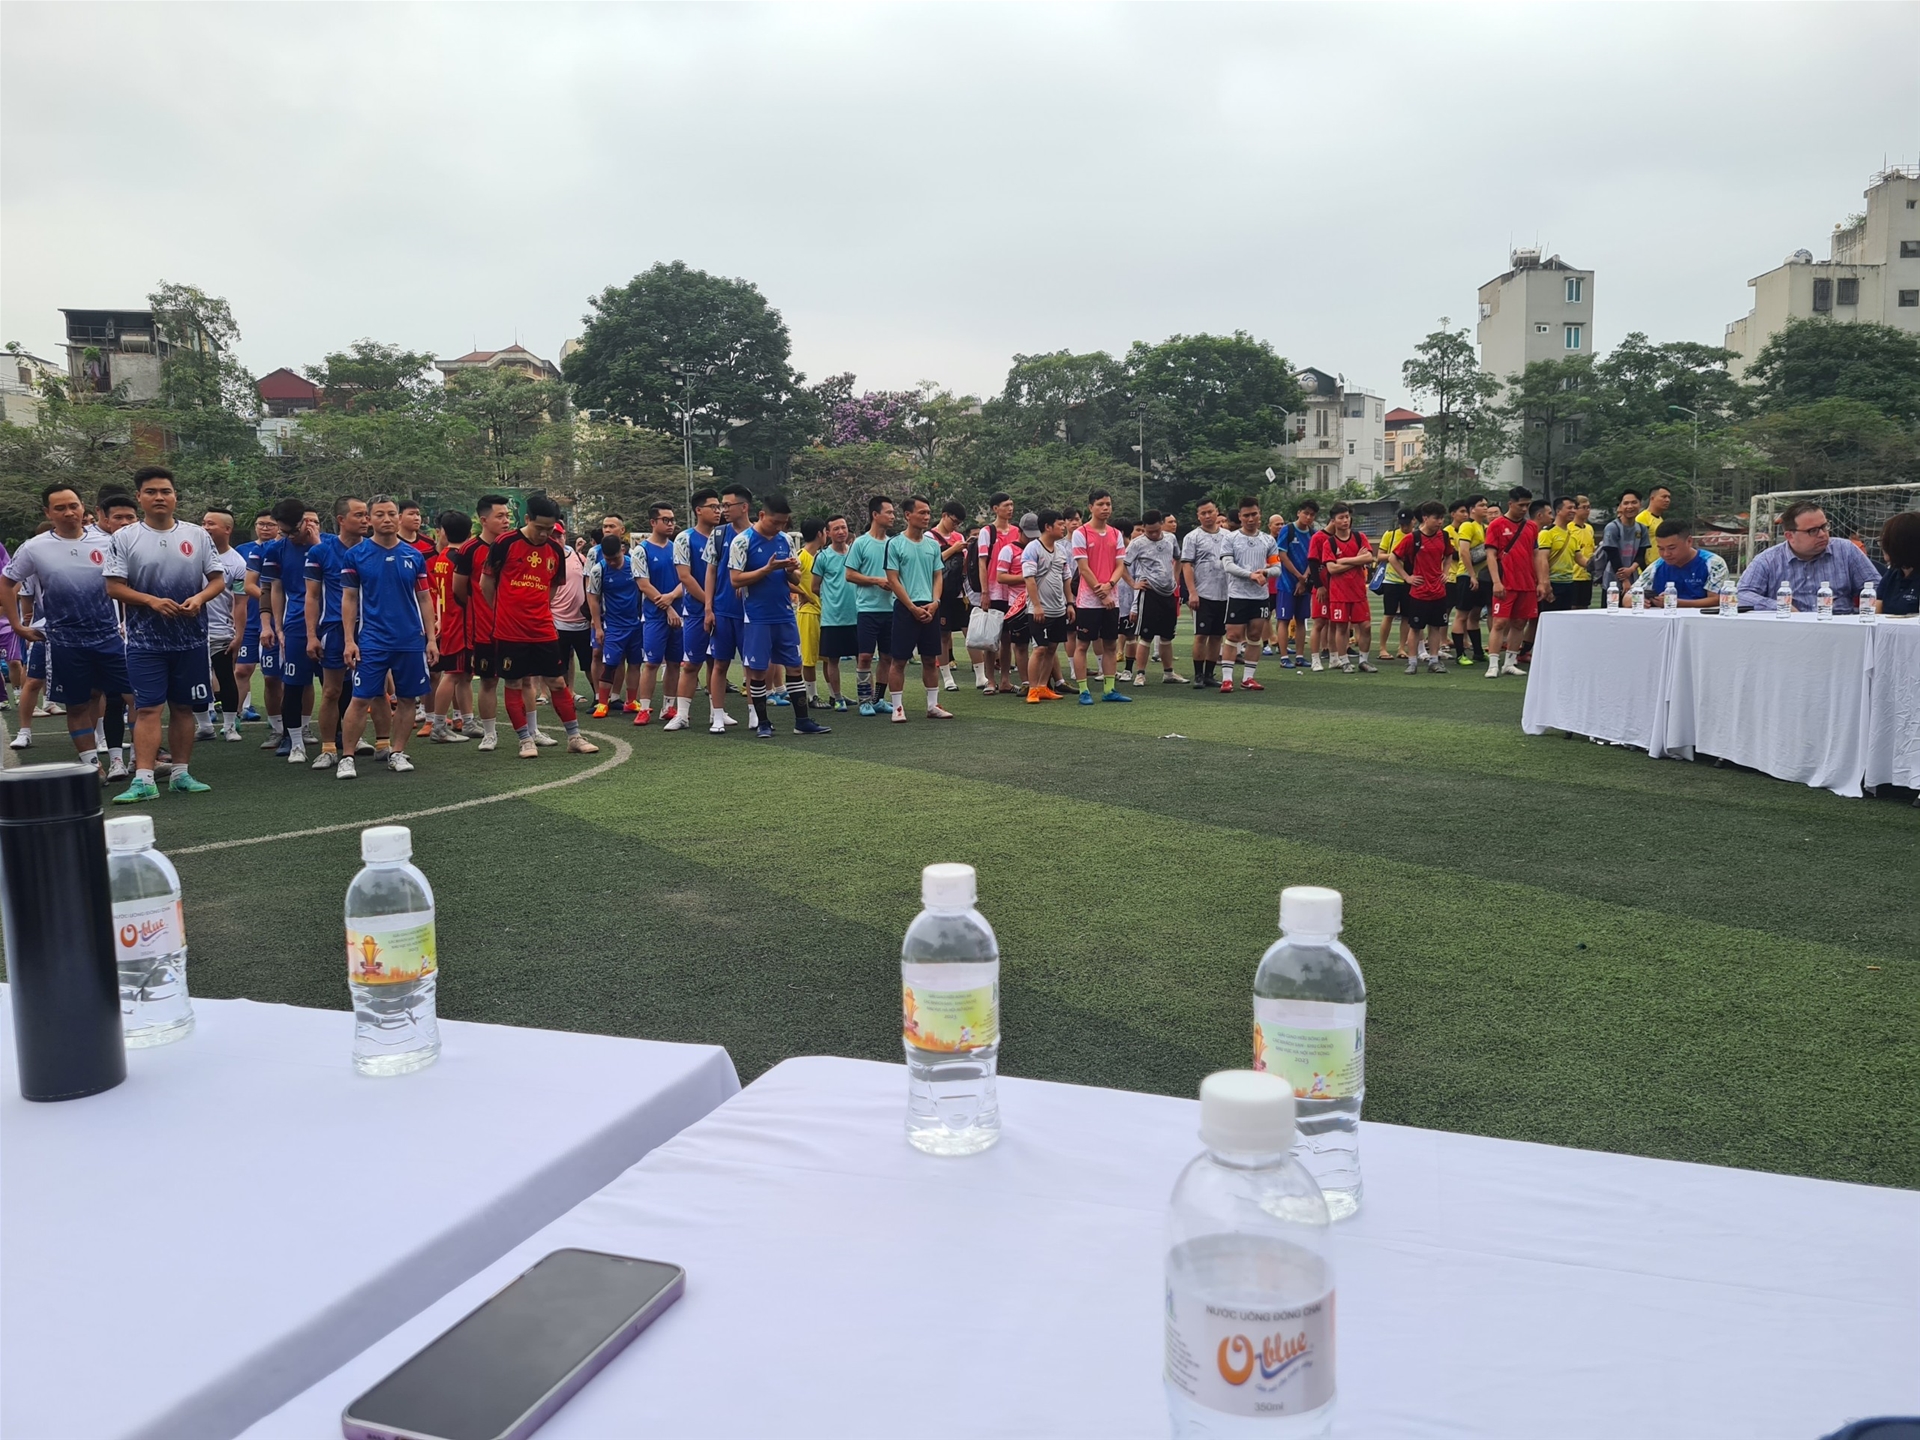 Nước uống Oblue - nhà tài trợ cho giải đấu giao hữu bóng đá “Các khách sạn- khu căn hộ khu vực Hà Nội mở rộng”.